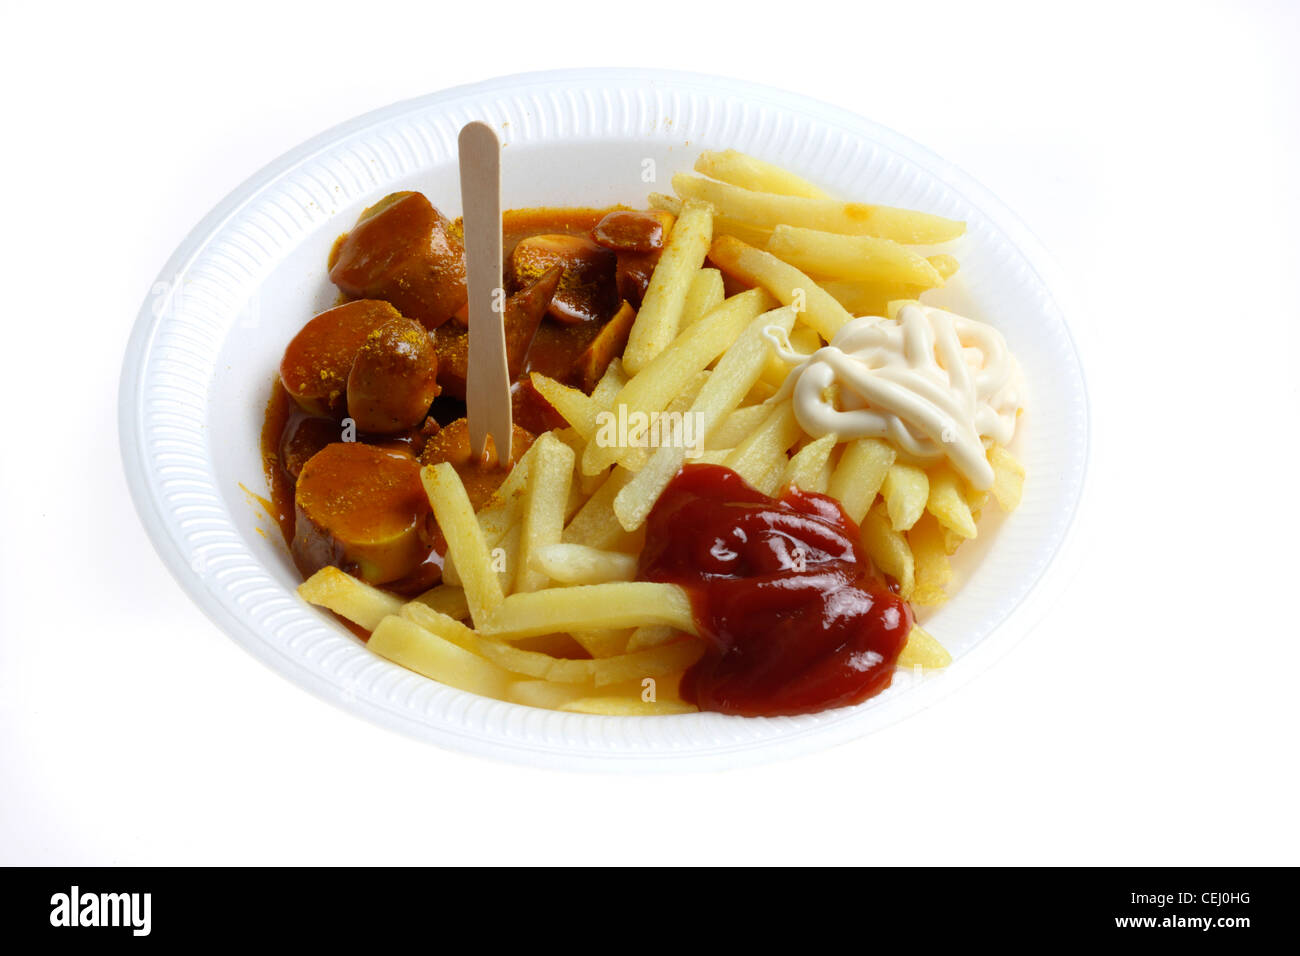 Ernährung, Fast-Food. Pommes Frites mit einer Currywurst, eine Bratwurst-Stil-Wurst mit pikantem Curry und Tomatensauce. Stockfoto